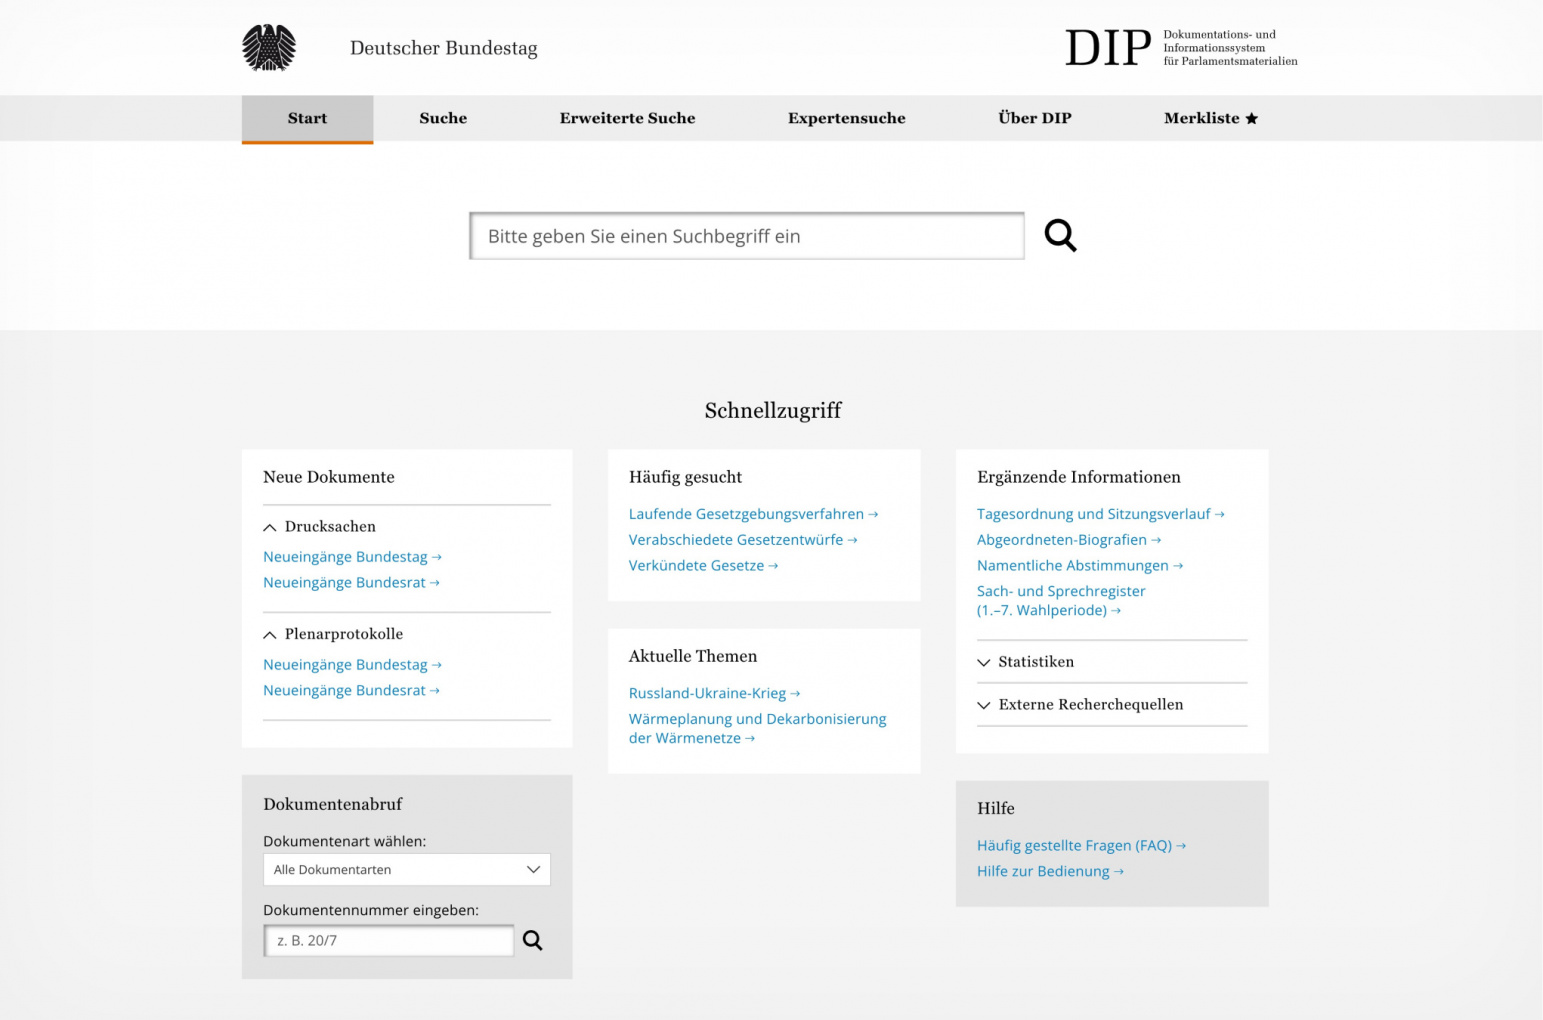 Startseite des Dokumentations- und Informationssystems des Deutschen Bundestages